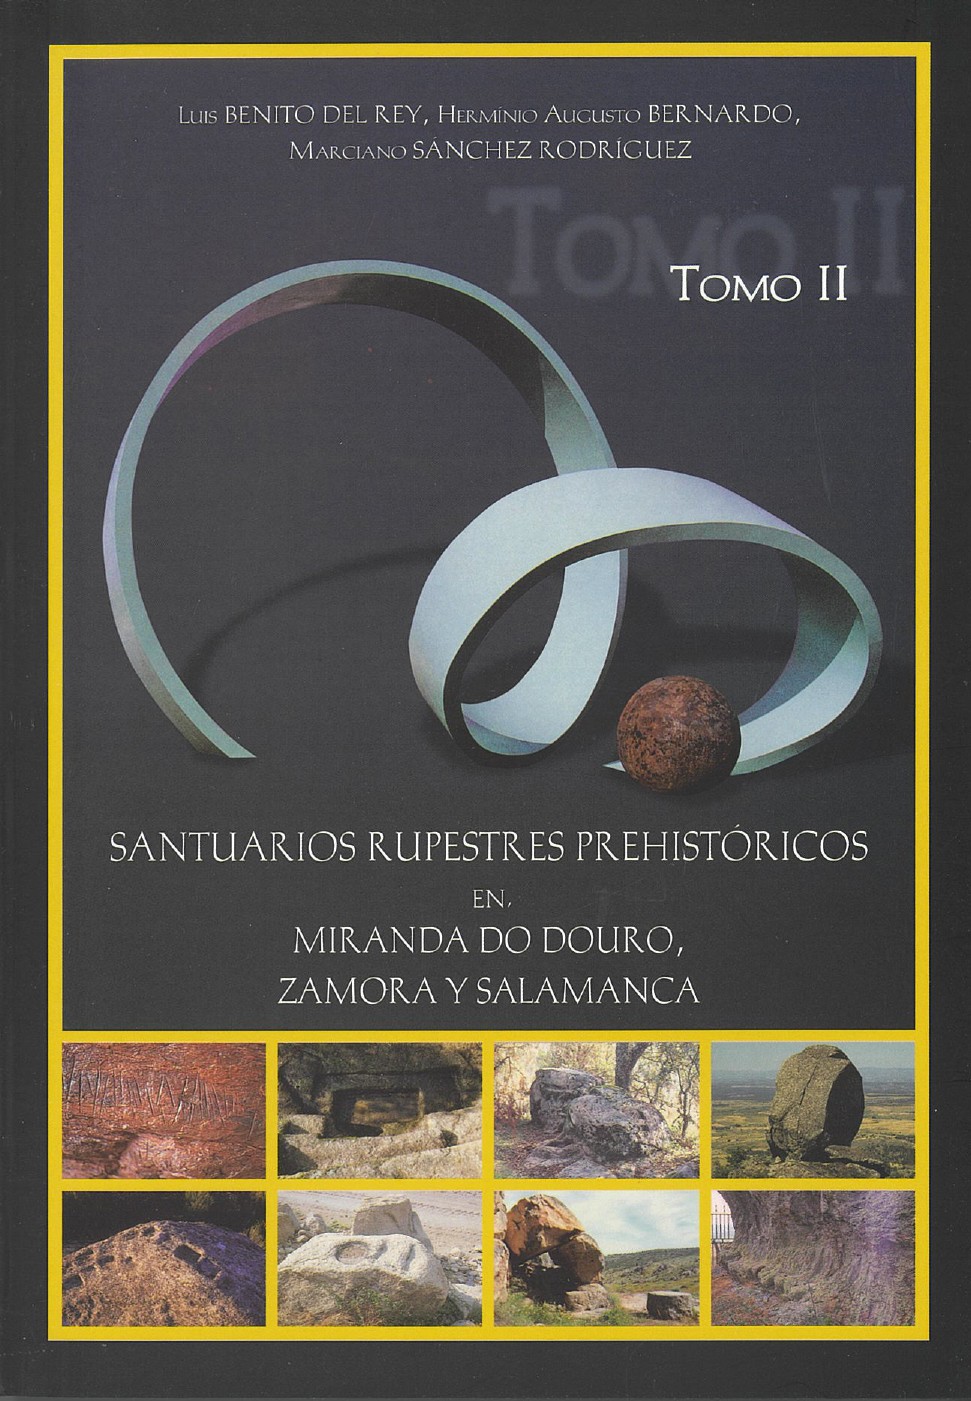 Santuarios rupestres prehistoricos i   espanhol page 0001 1 980 2500